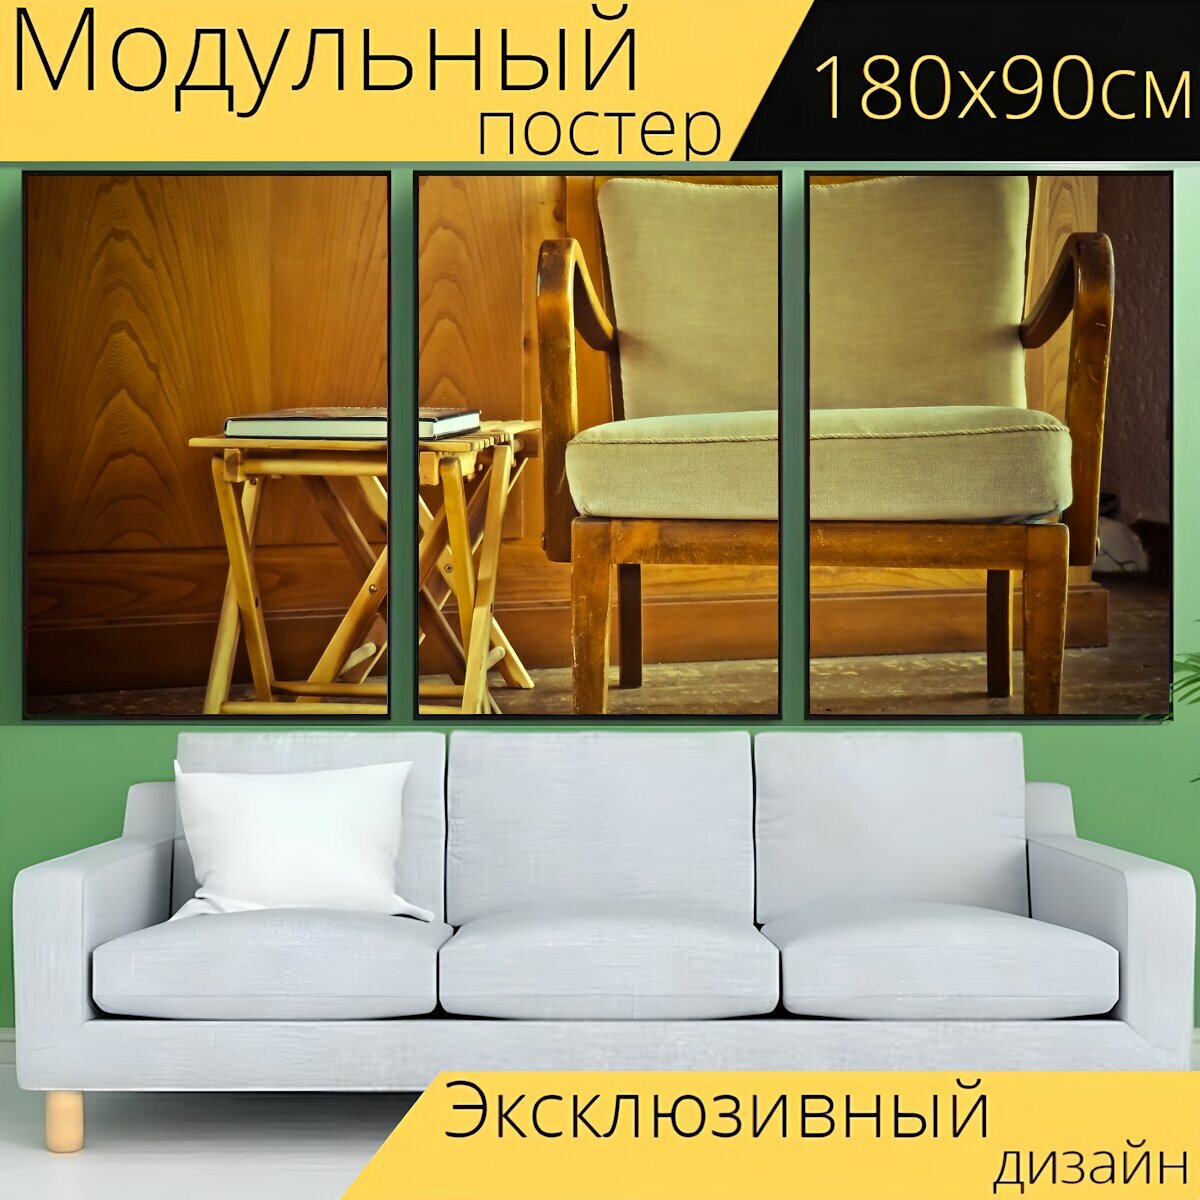 Модульный постер "Стул, таблица, мебель" 180 x 90 см. для интерьера